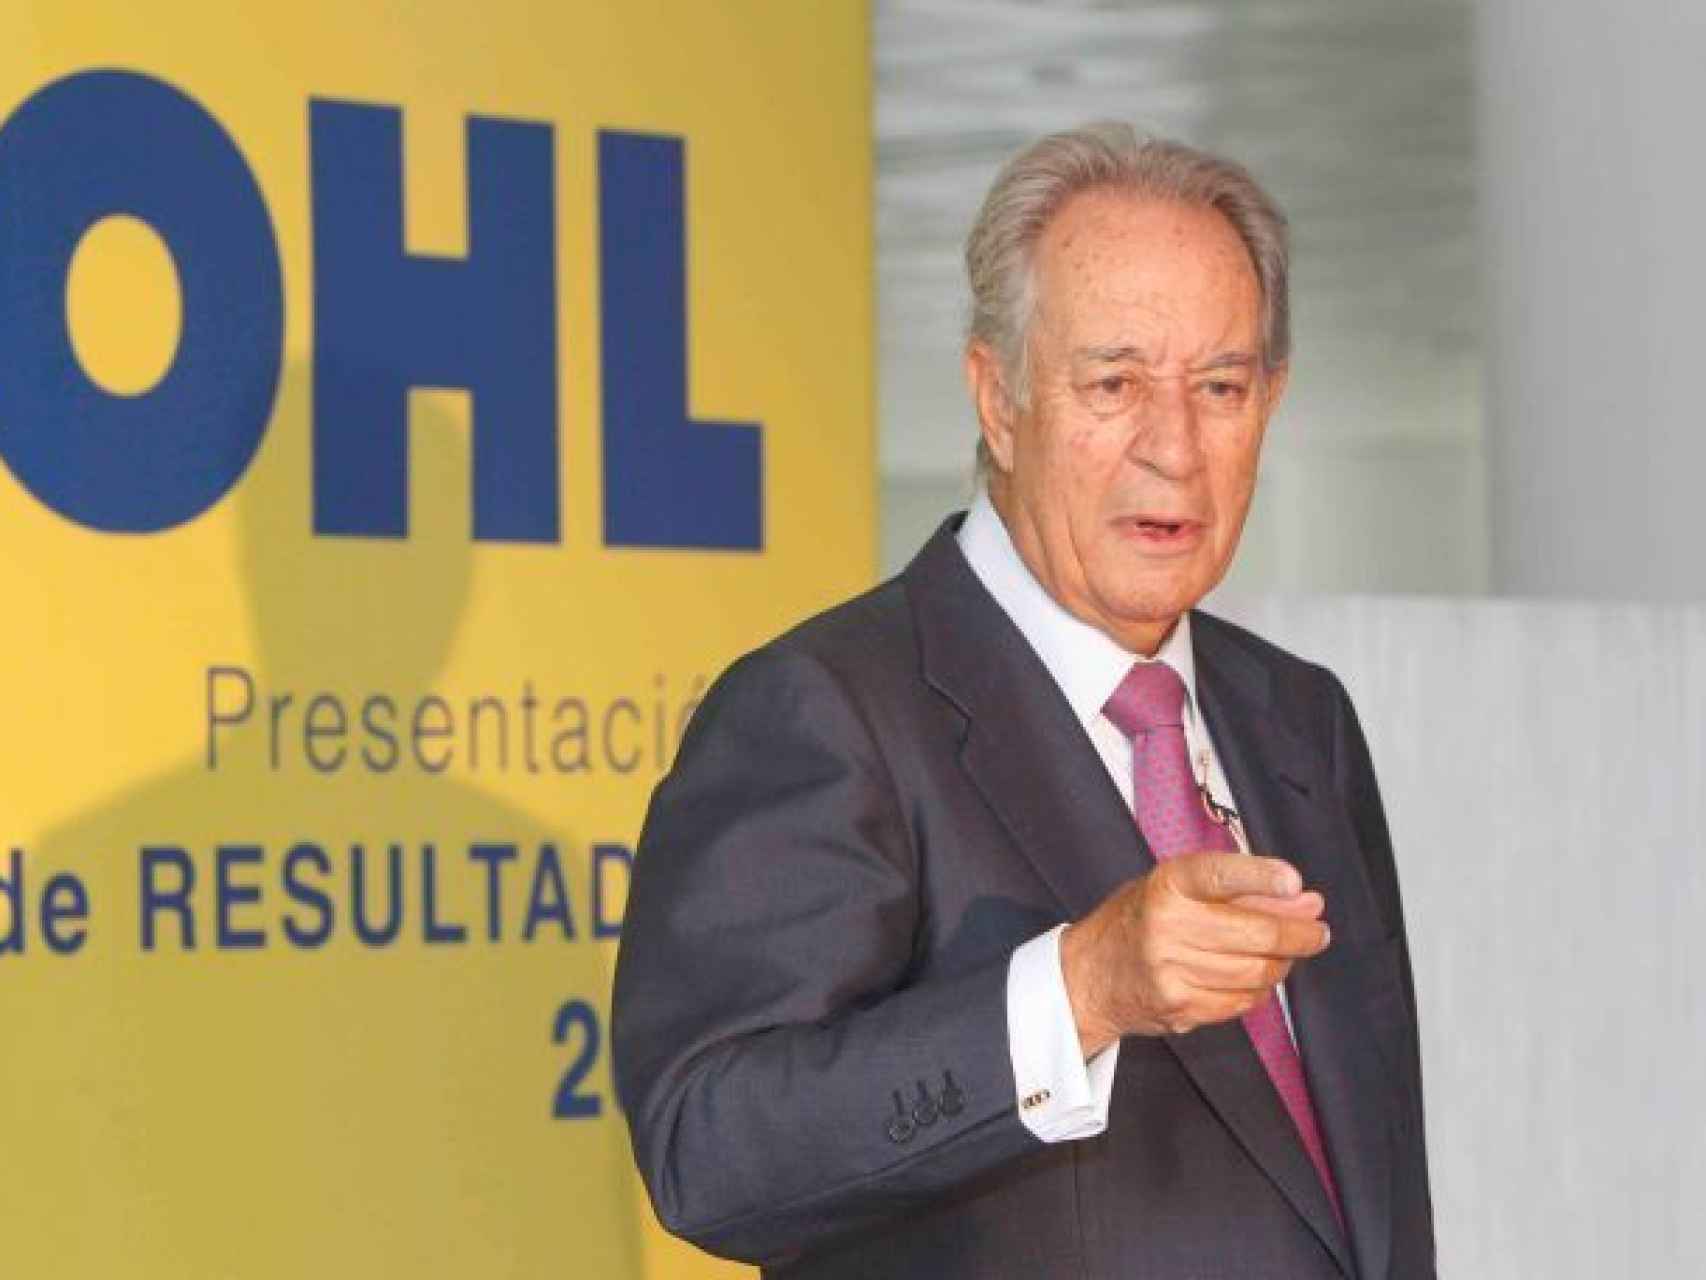 Villar Mir en una presentación de resultados de OHL